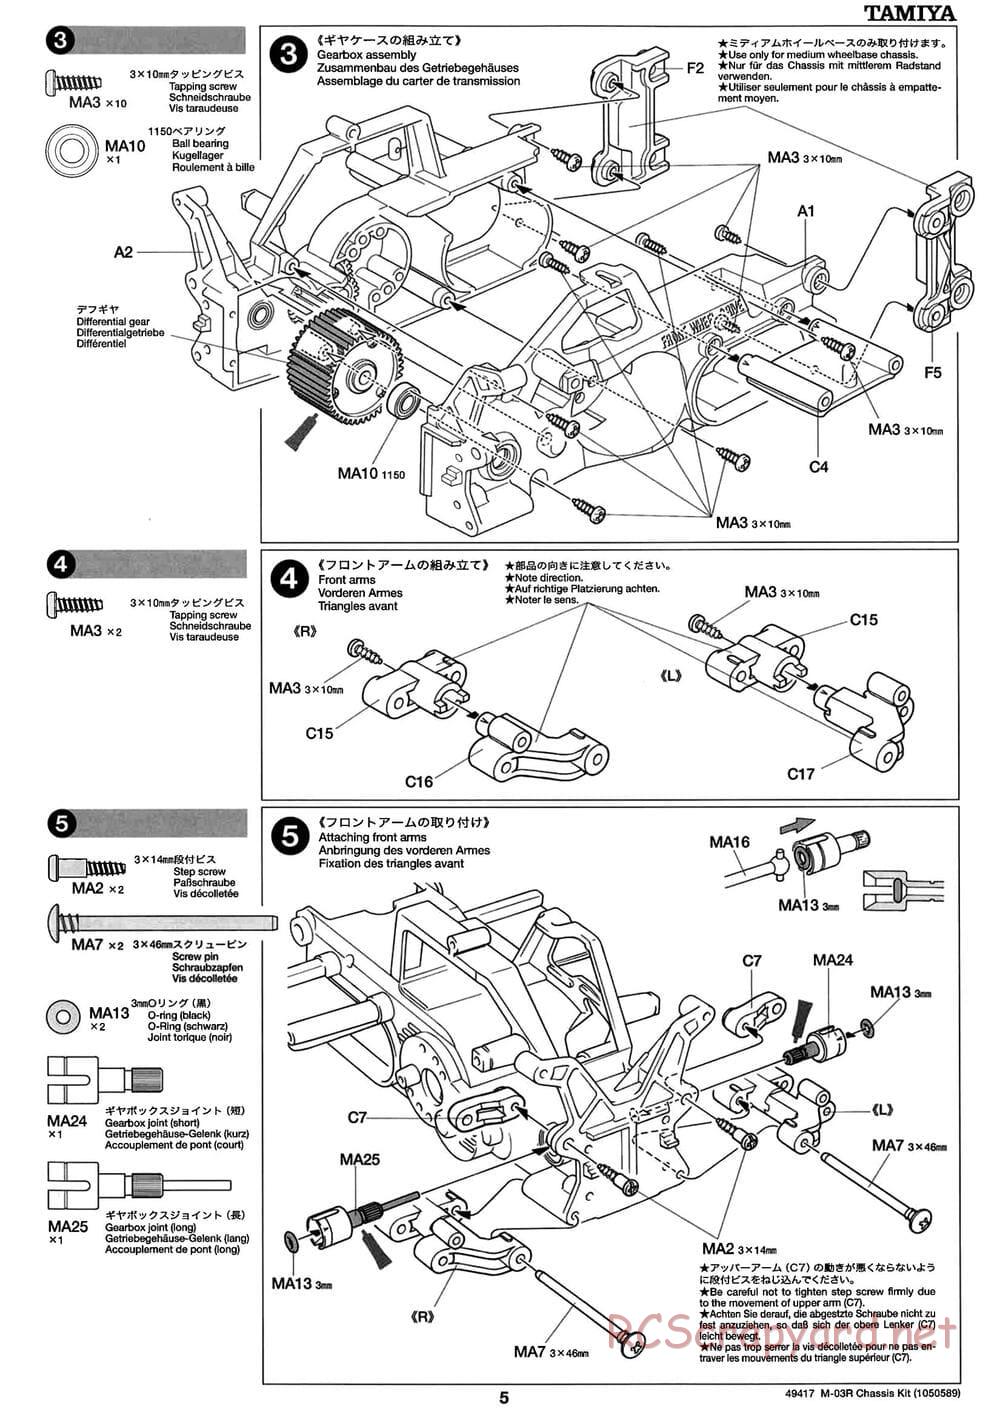 Tamiya - M-03R Chassis - Manual - Page 5